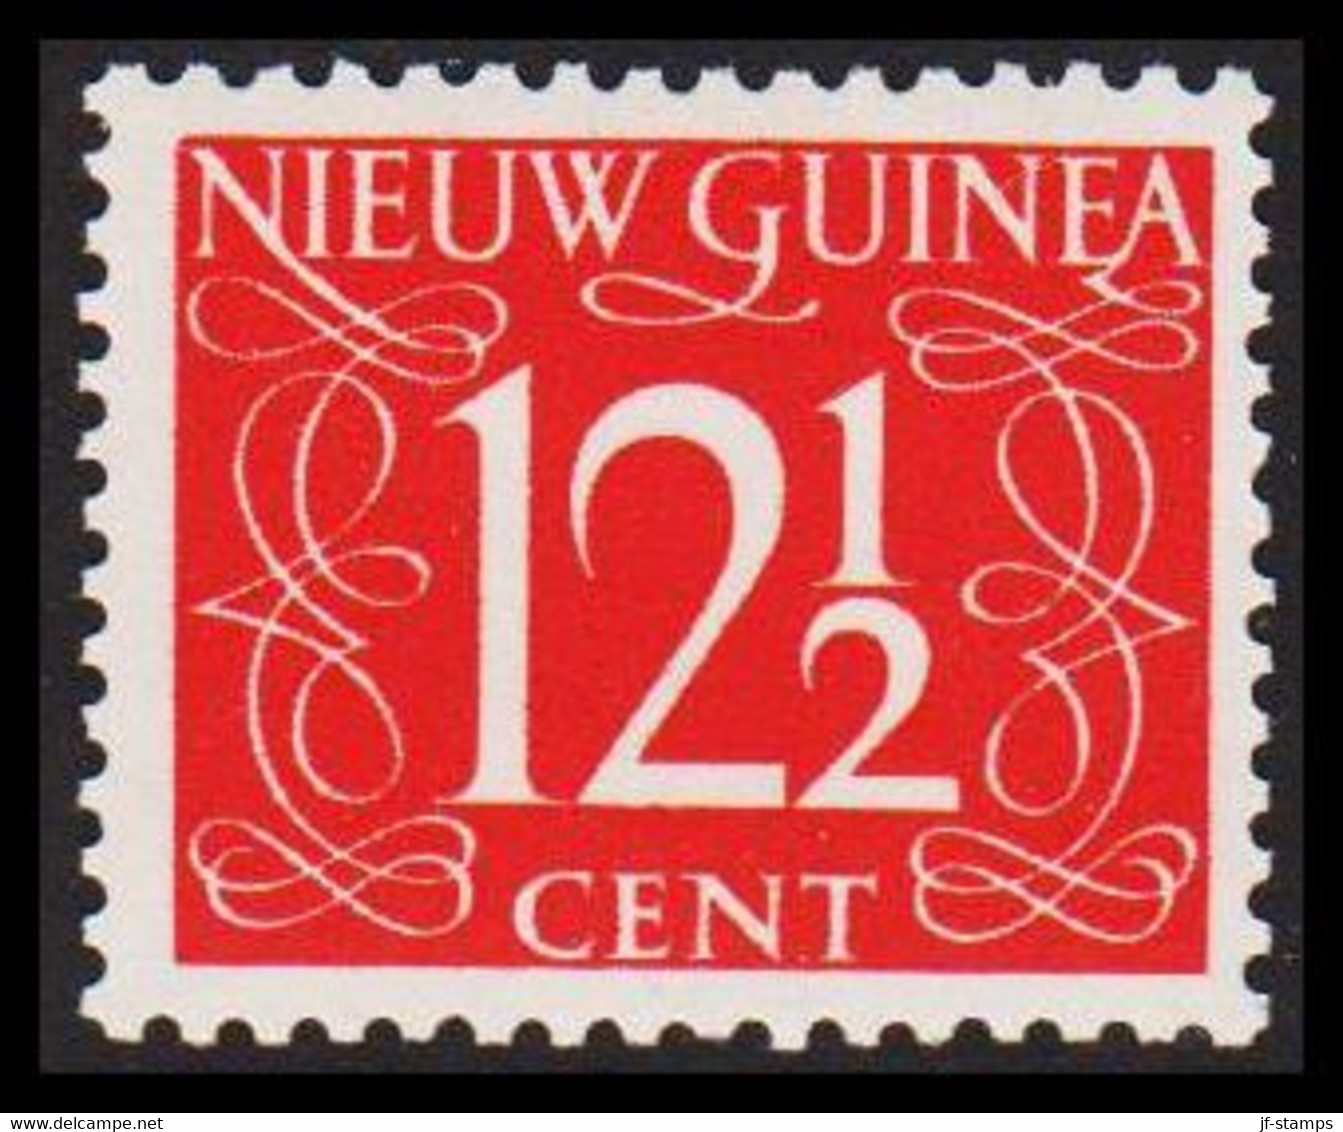 1950. NIEUW GUINEA. Nummerals- Type 12½ CENT Hinged.  - JF529322 - Nederlands Nieuw-Guinea